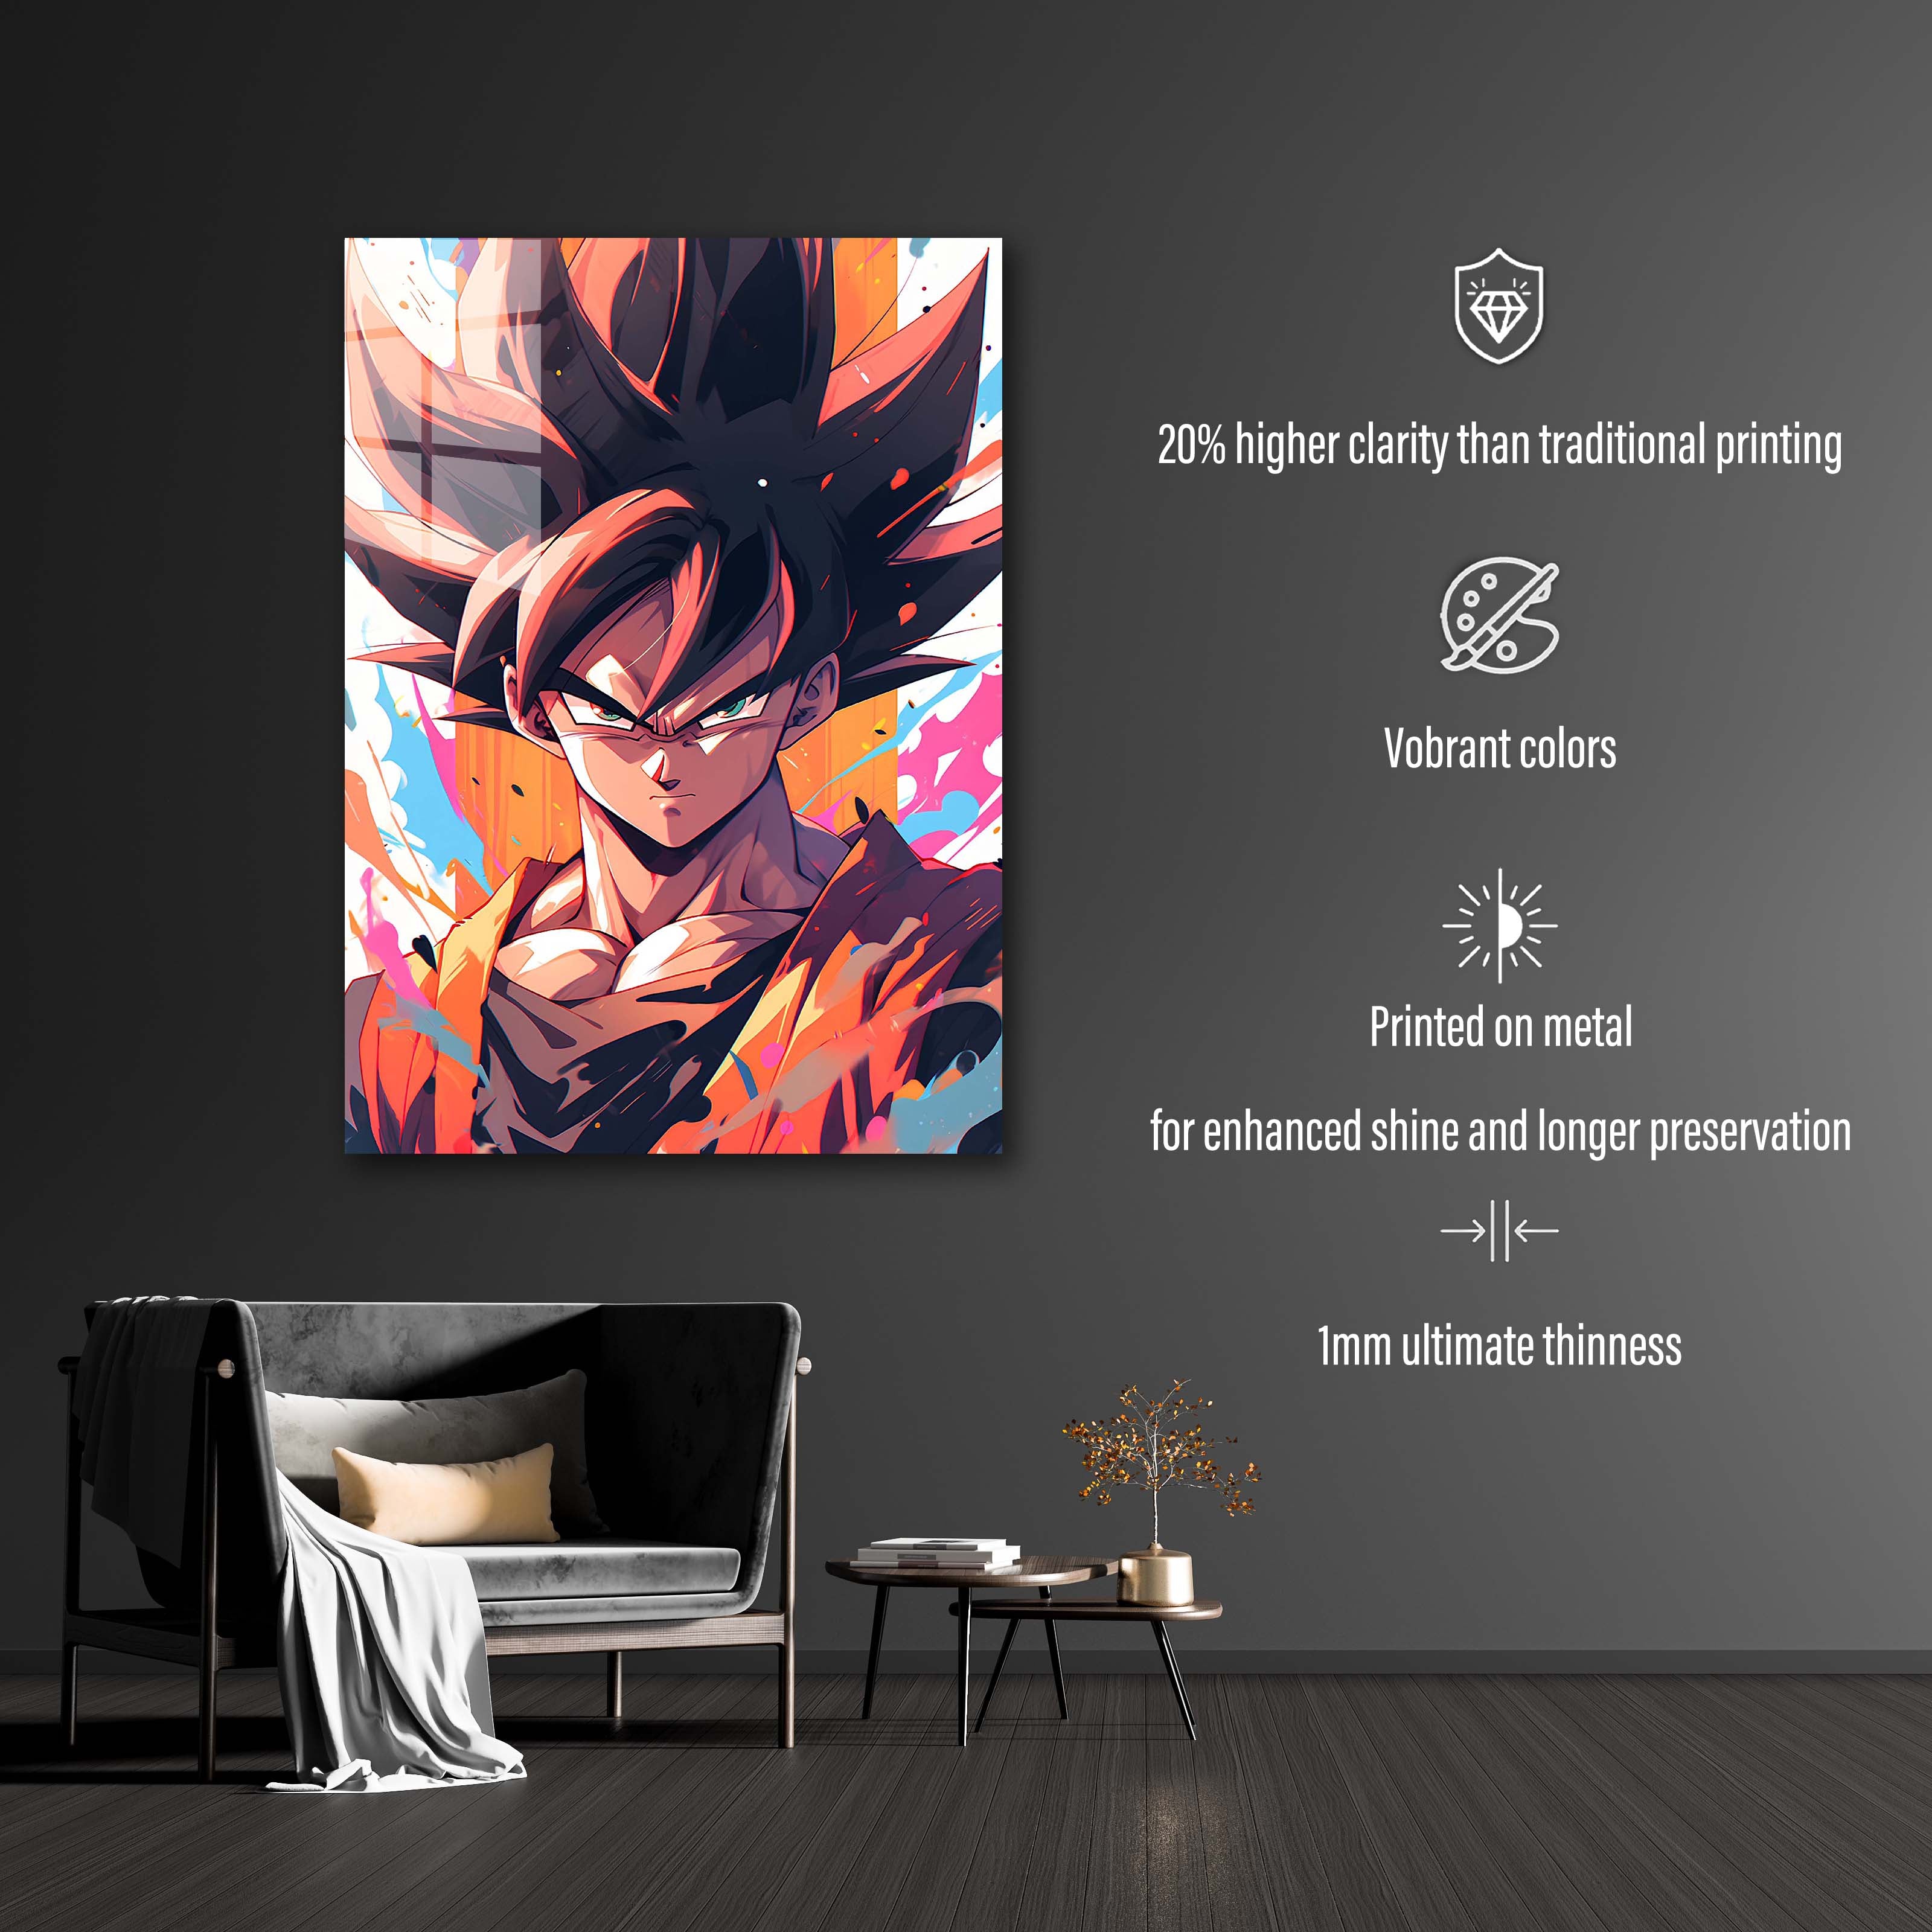 Goku-designed by @Artfinity